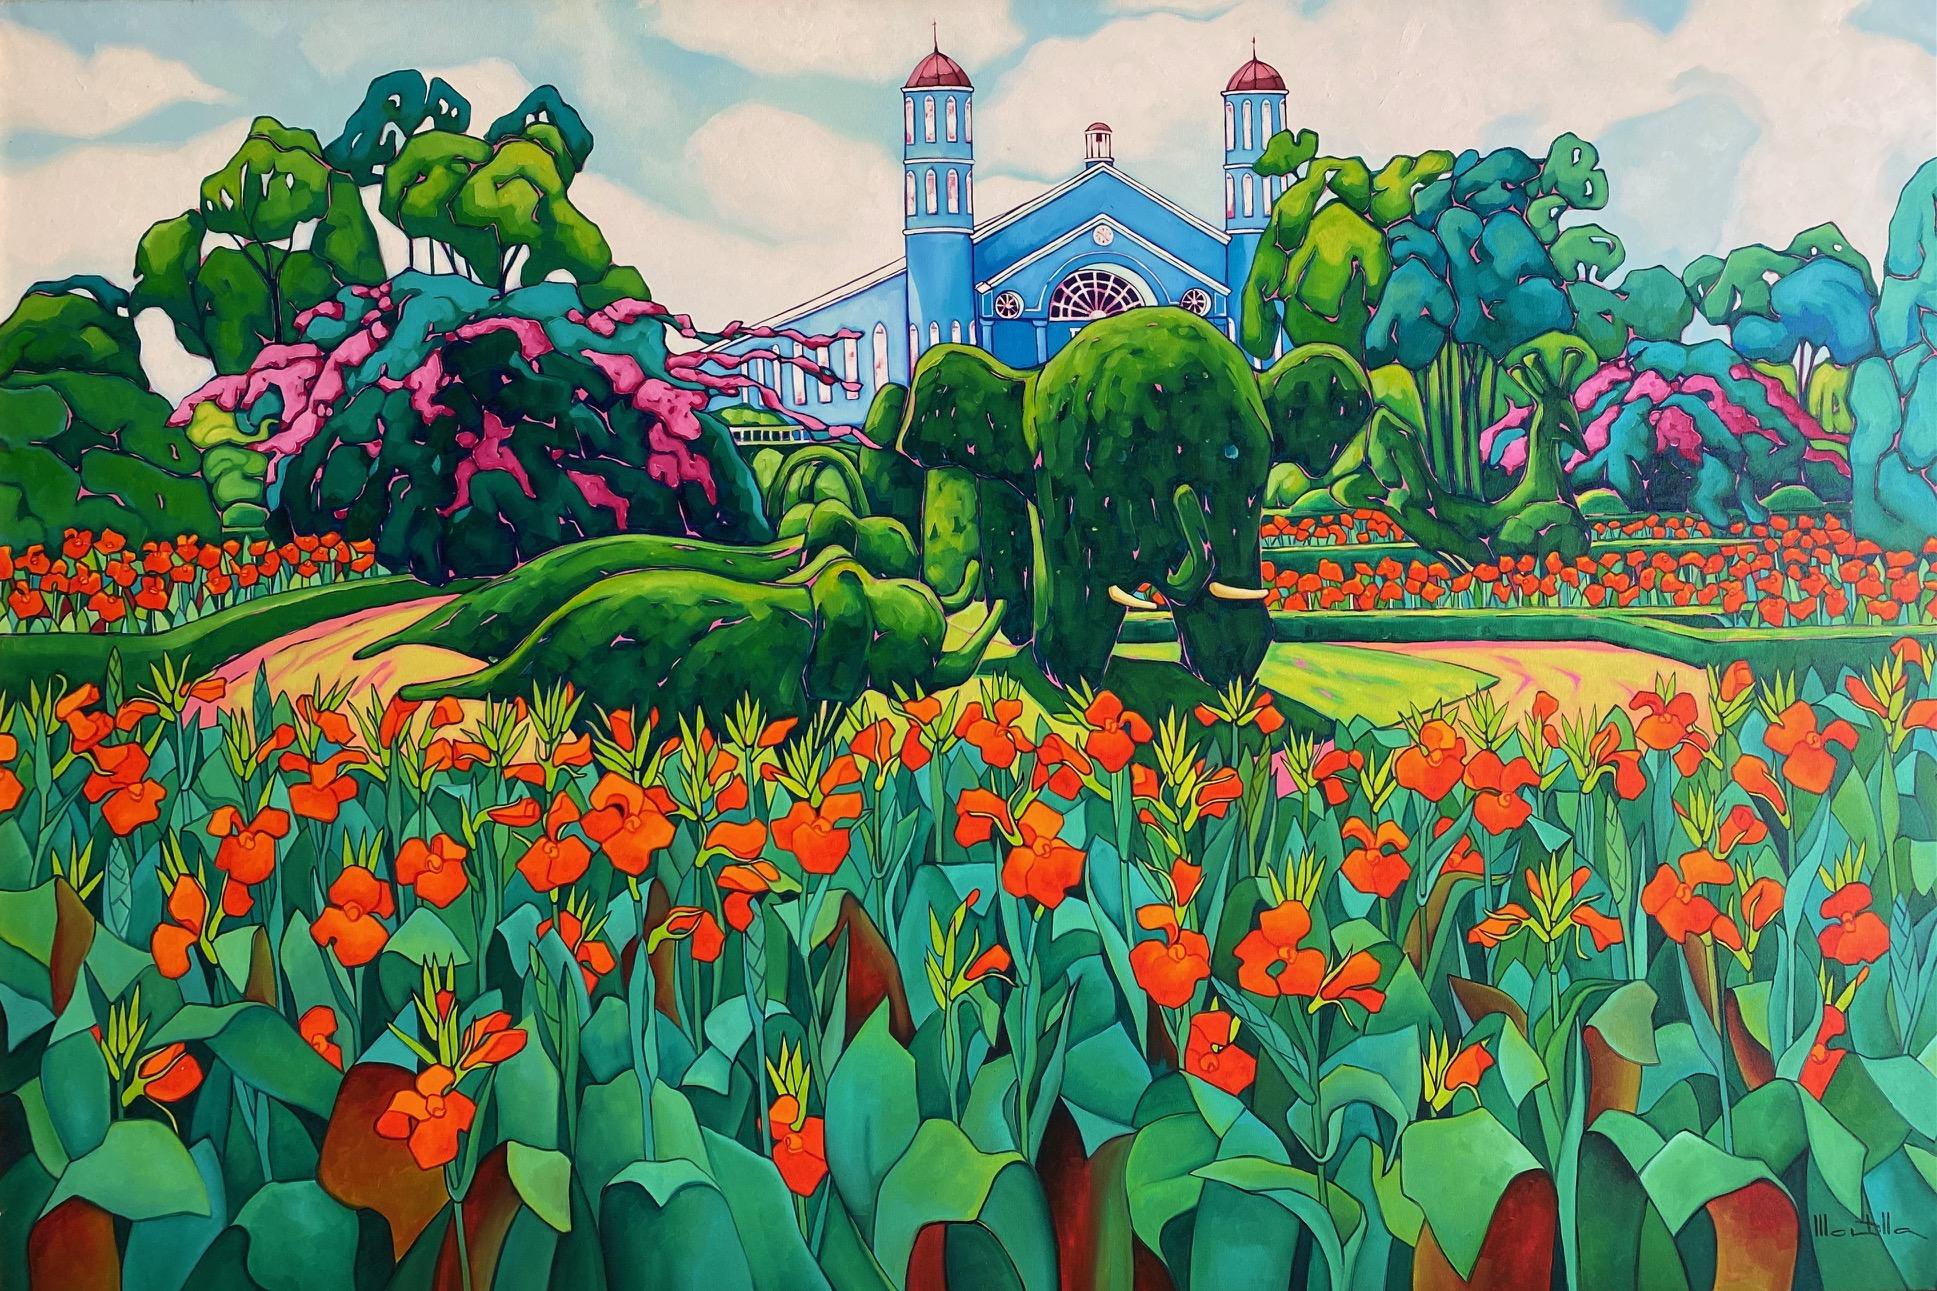 Chico Montilla Landscape Painting – ¨Topiaria¨. Expressionistischer farbenfroher Garten. Großes Format Öl auf Leinwand